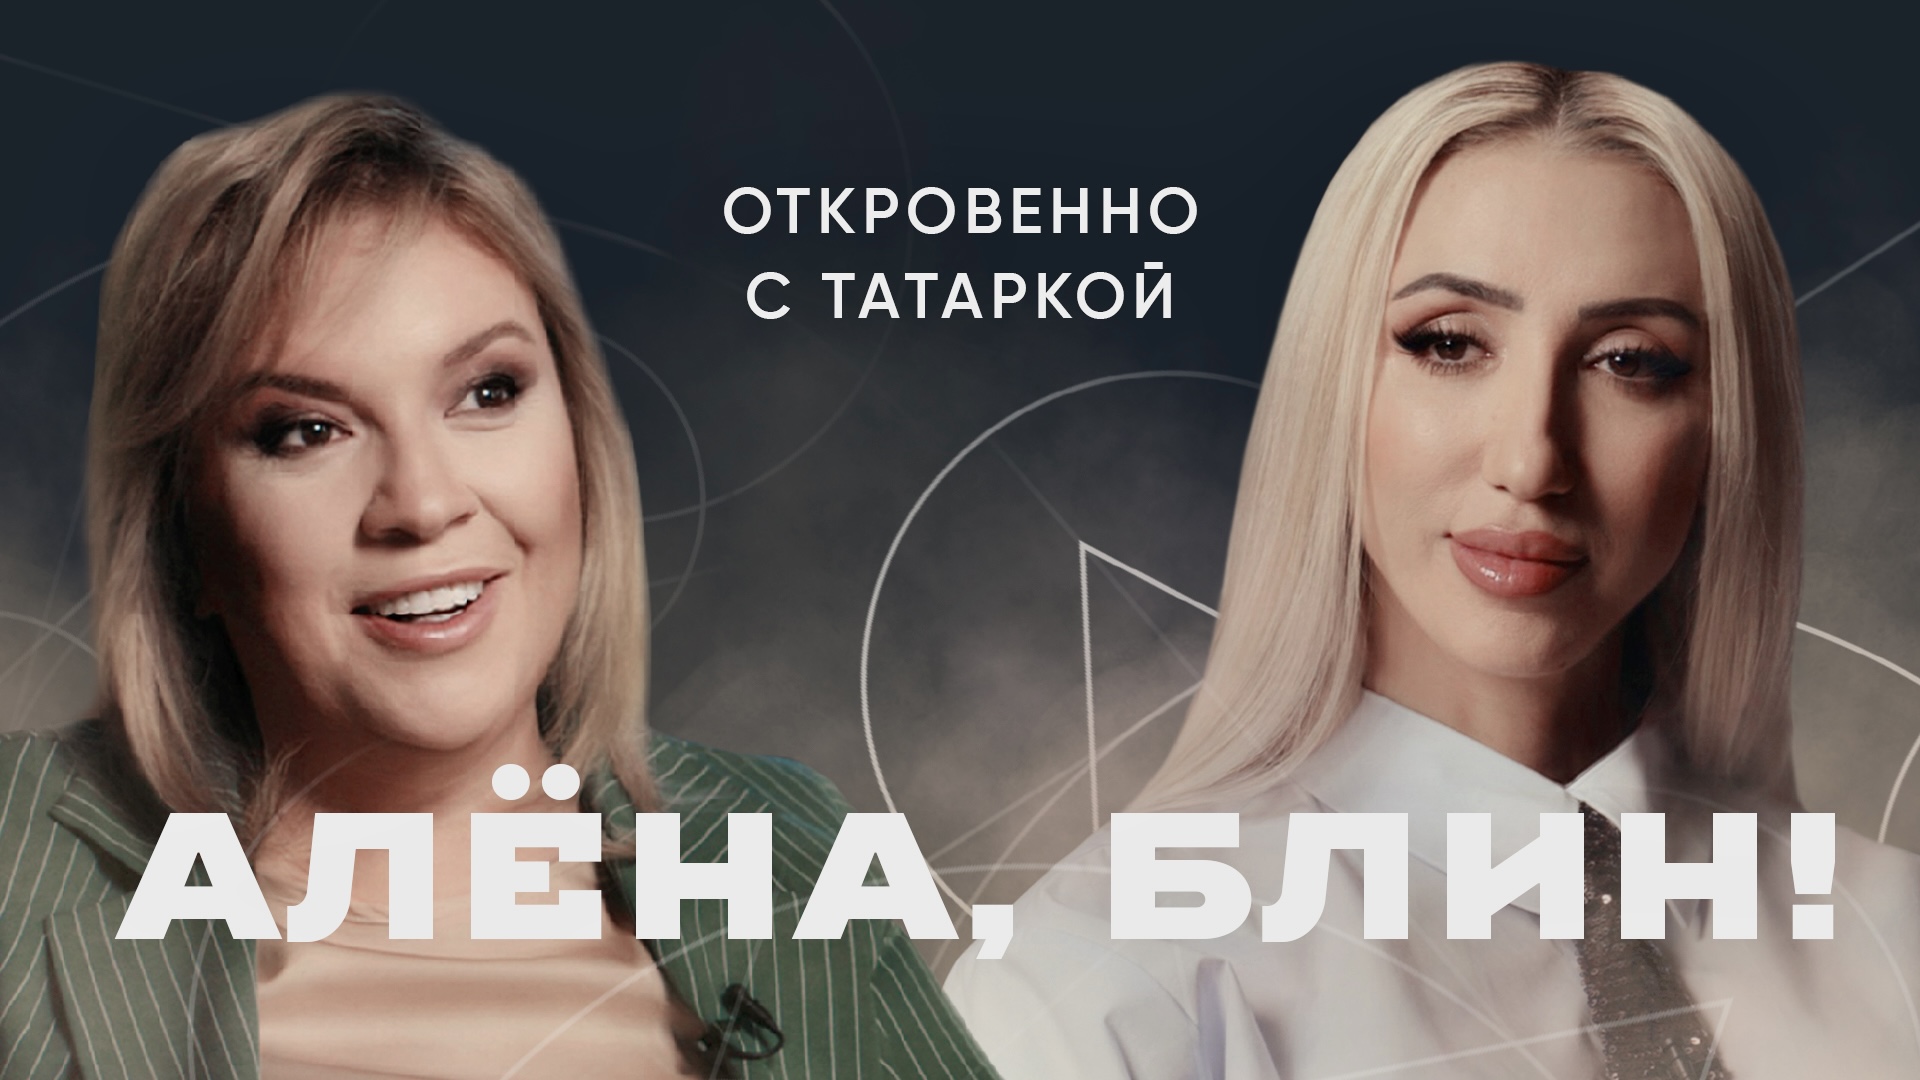 АЛЁНА, БЛИН! о светской журналистике, материнстве, украинских артистах и дружбе в шоу-бизнесе